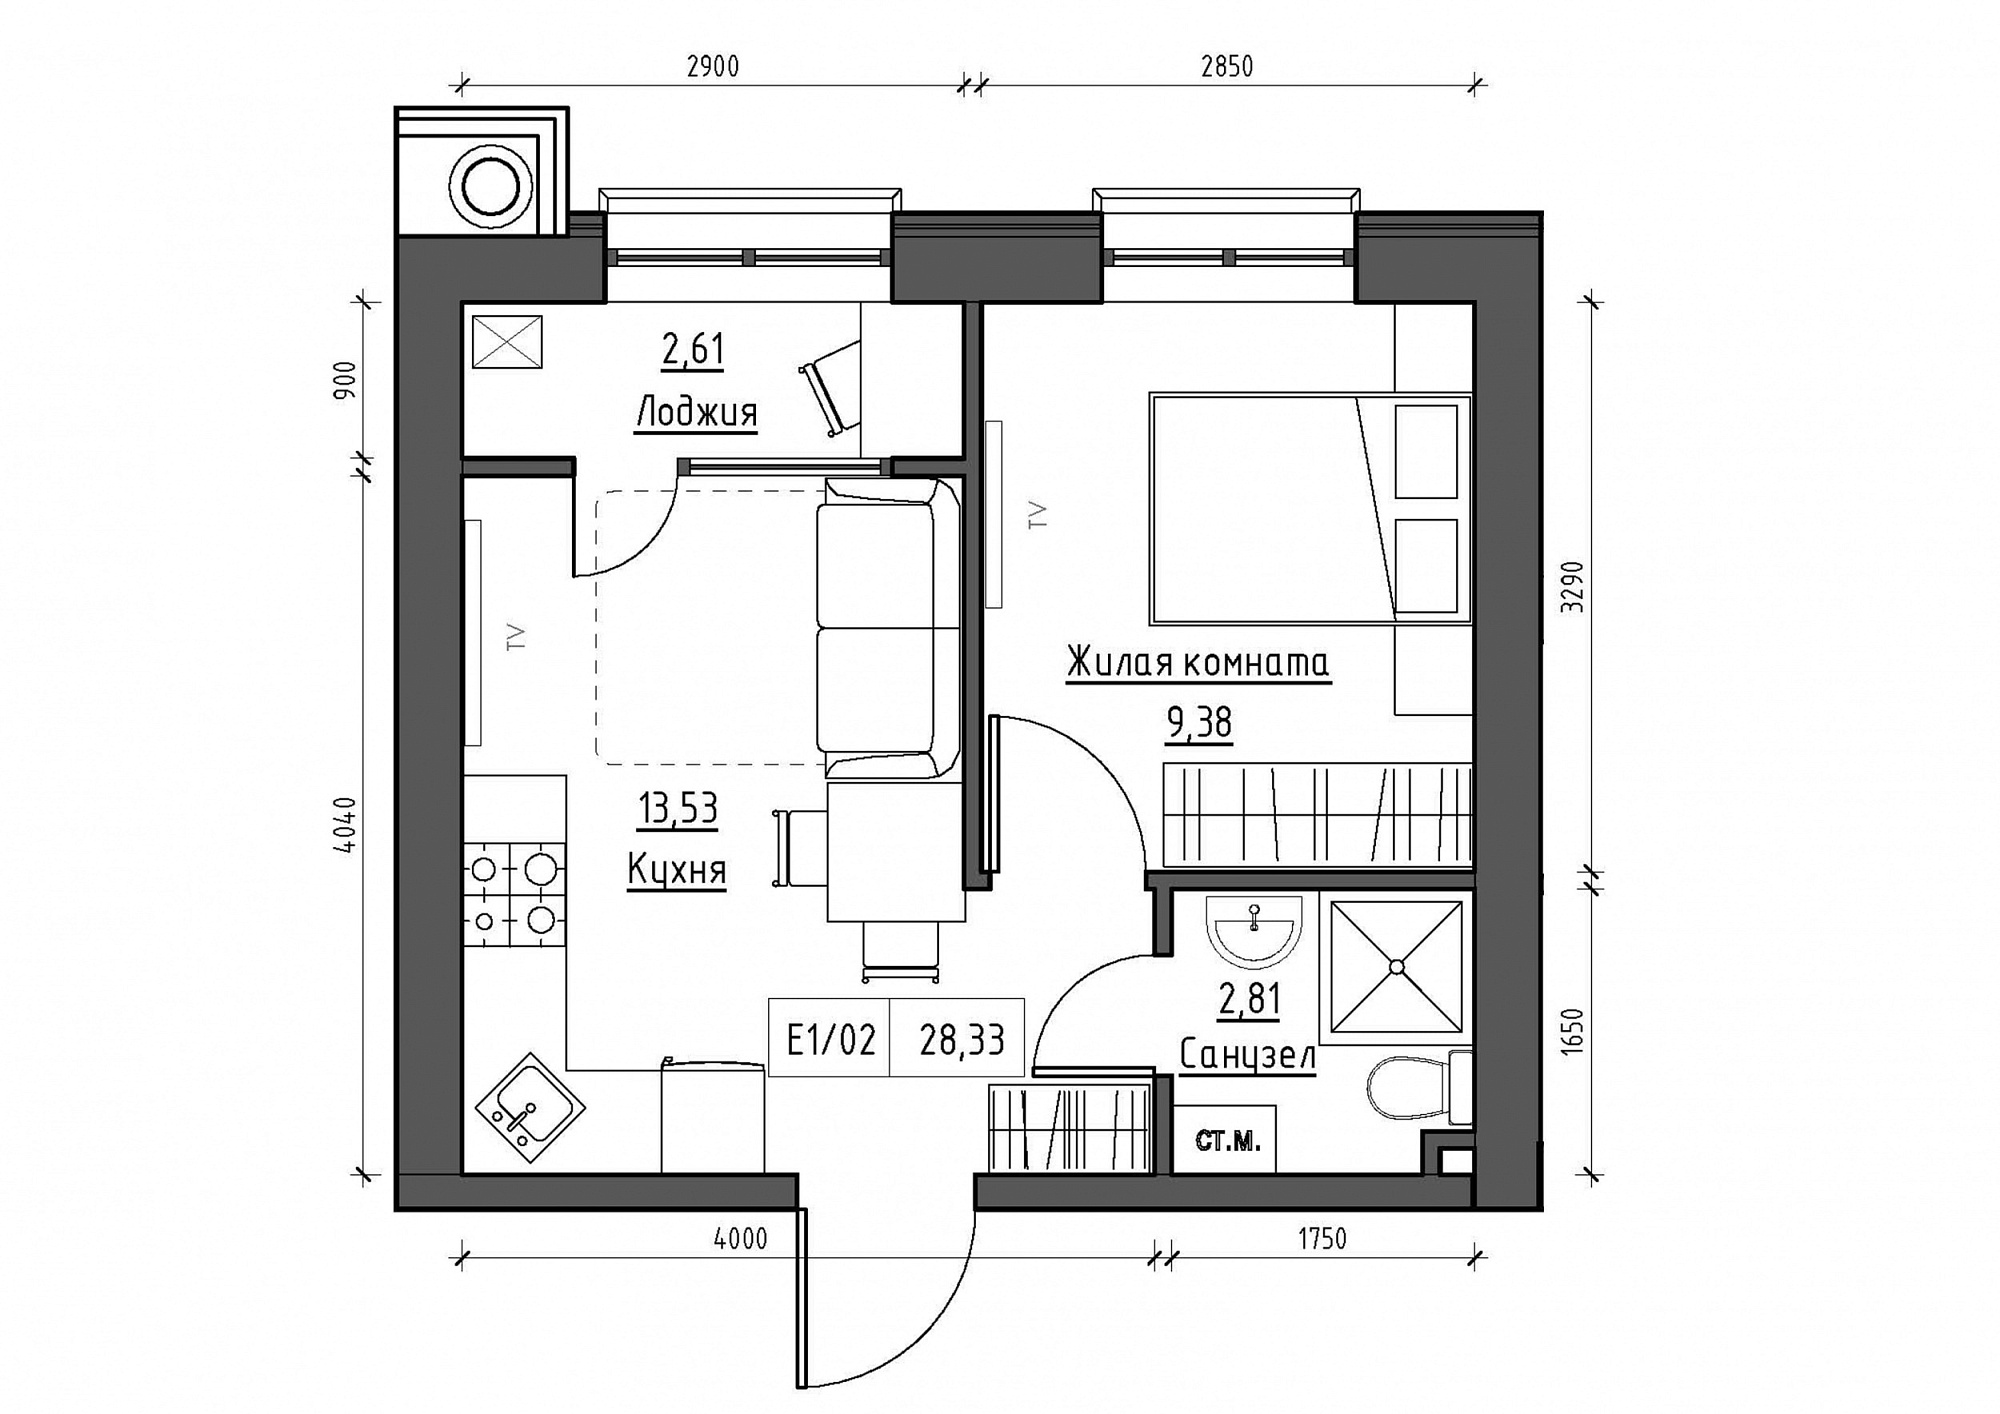 Планировка 1-к квартира площей 28.33м2, KS-011-05/0018.